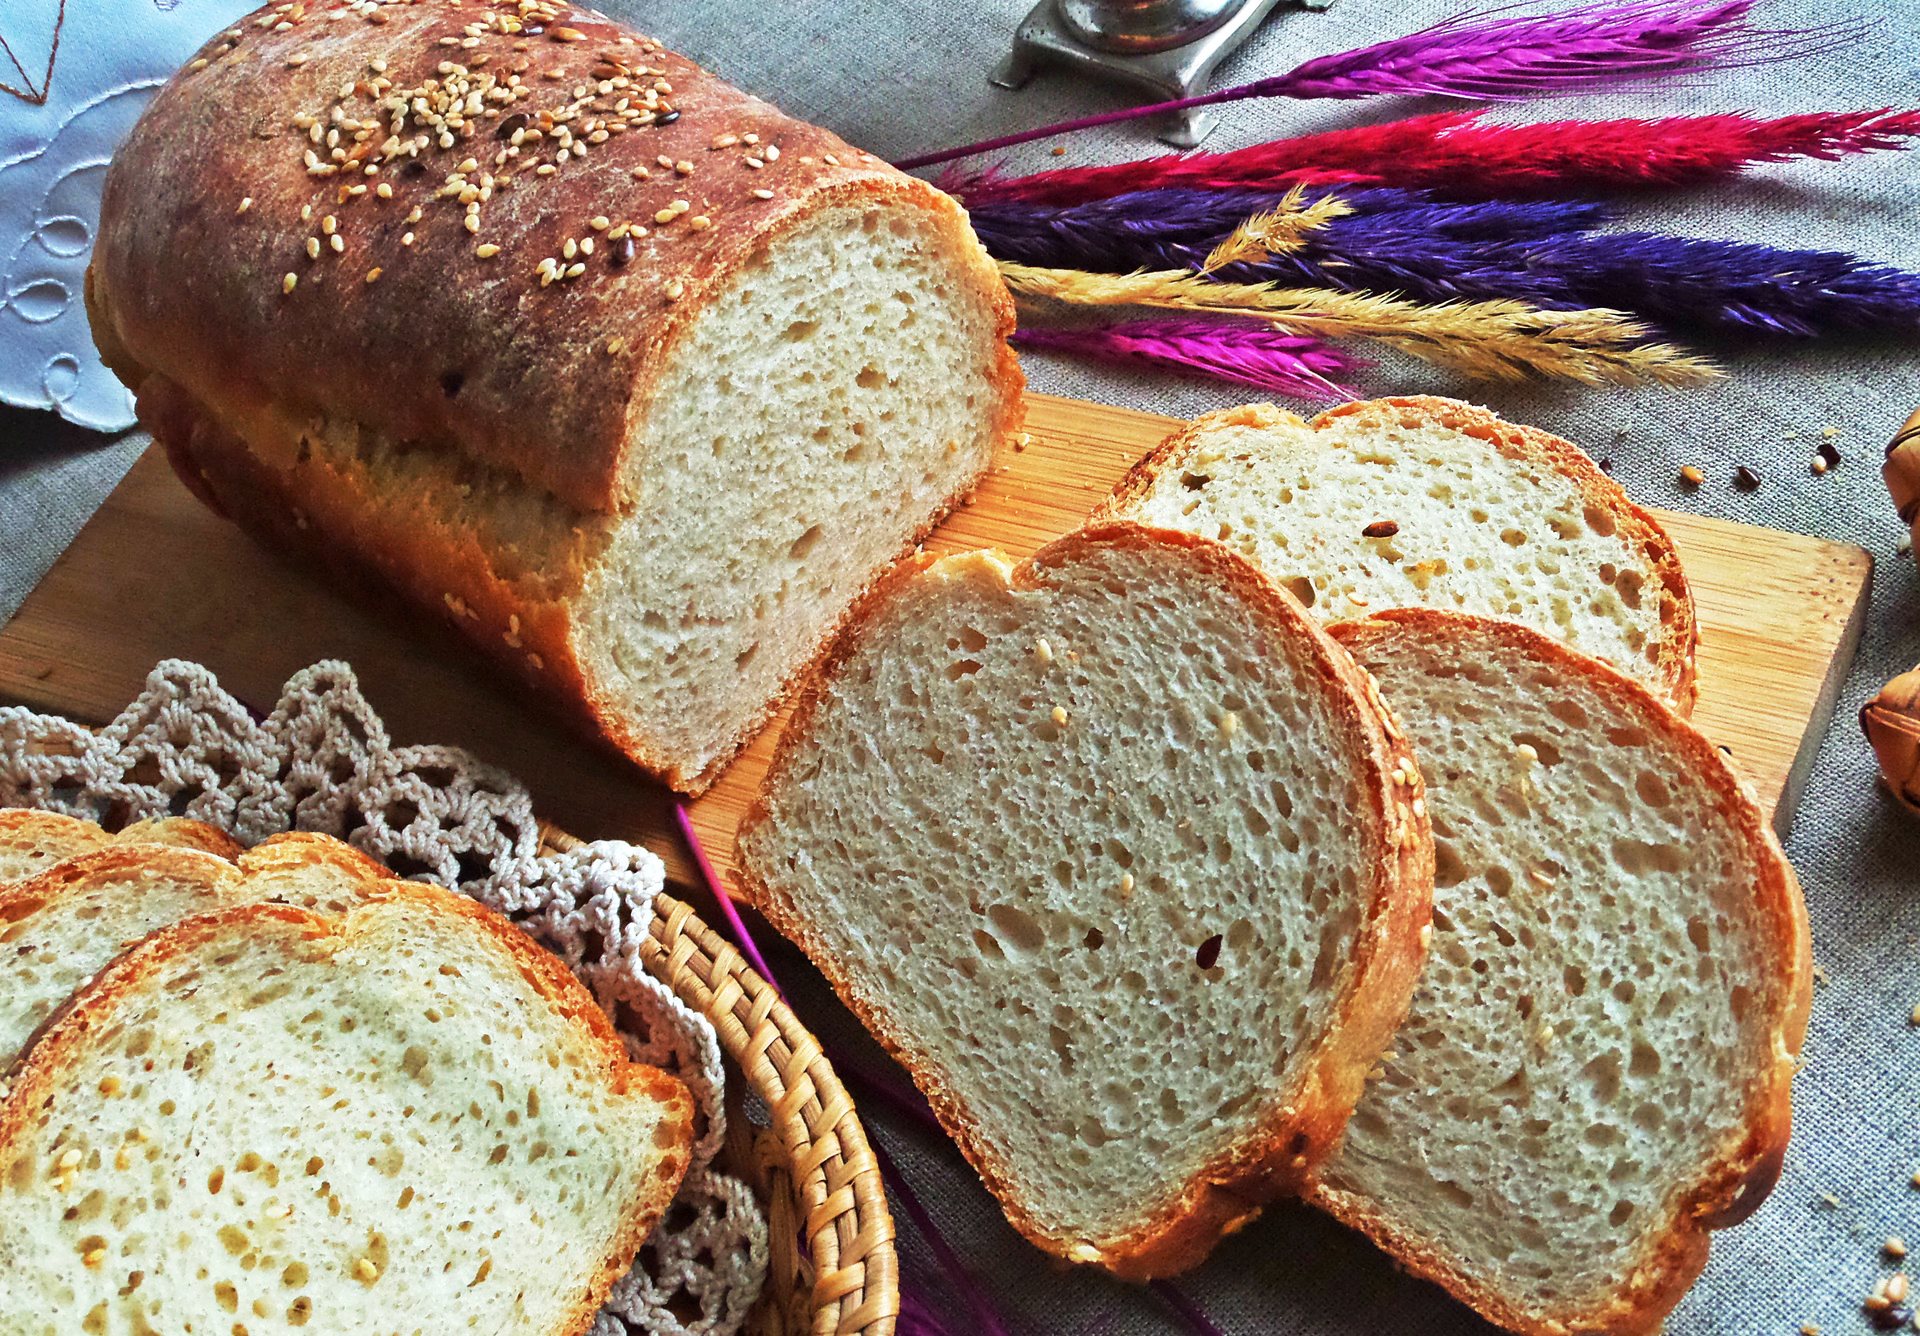 דירוג השמרים הטובים ביותר ליצרני לחם לשנת 2020